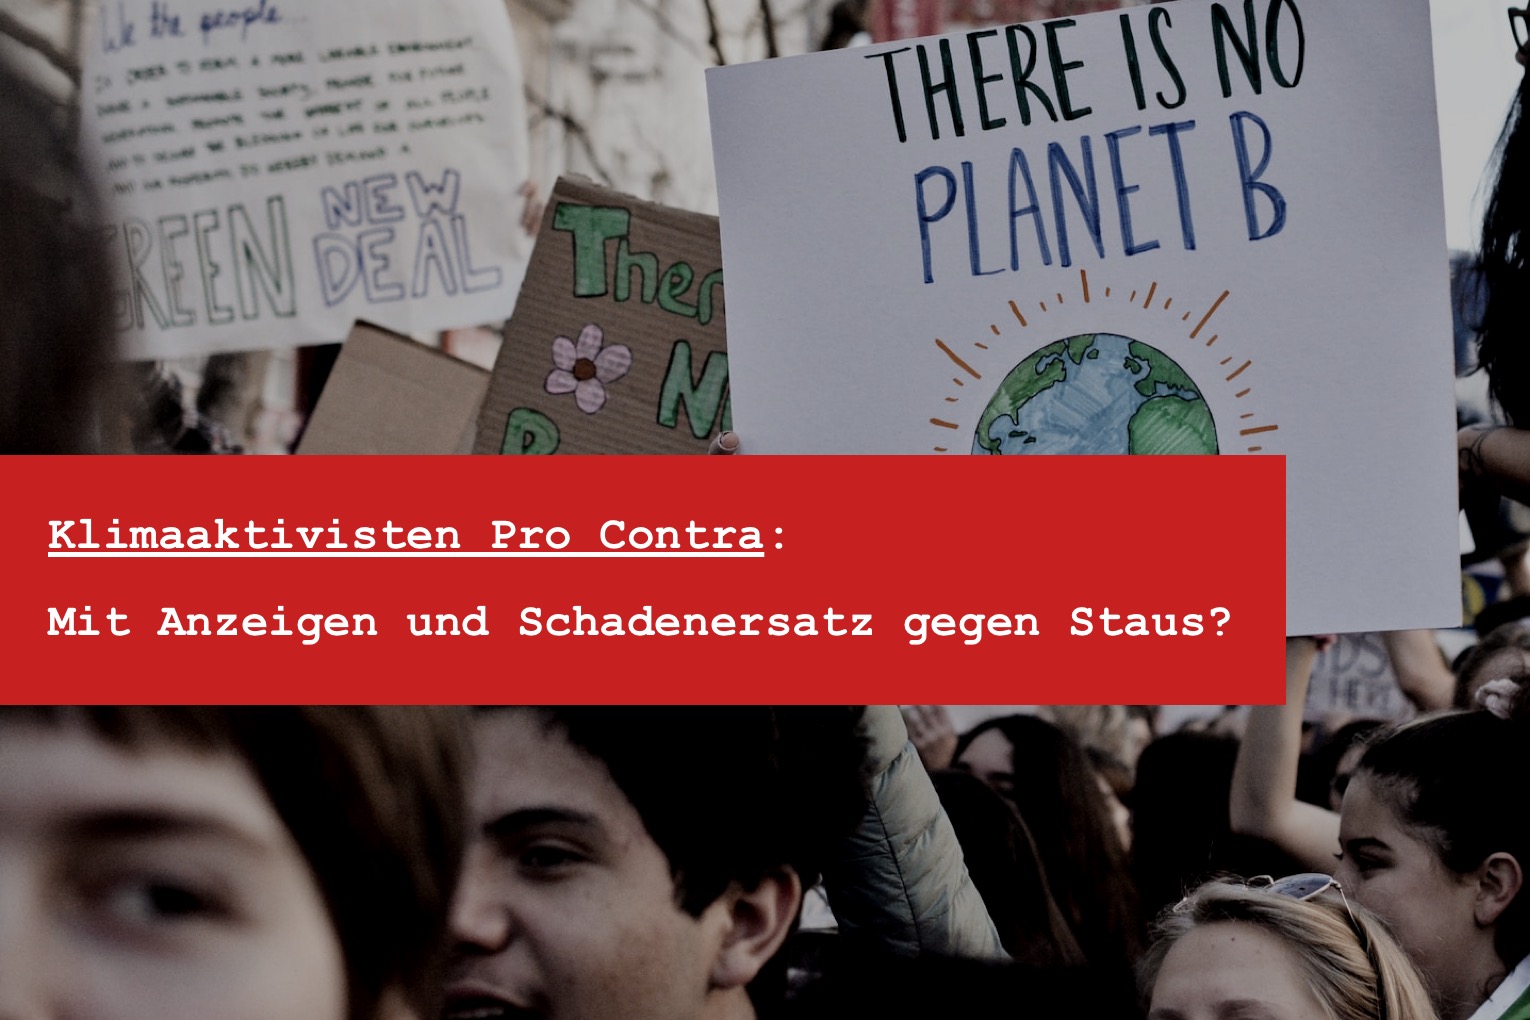 Klimaaktivisten pro contra - Klimaaktivisten anzeigen wegen Stau